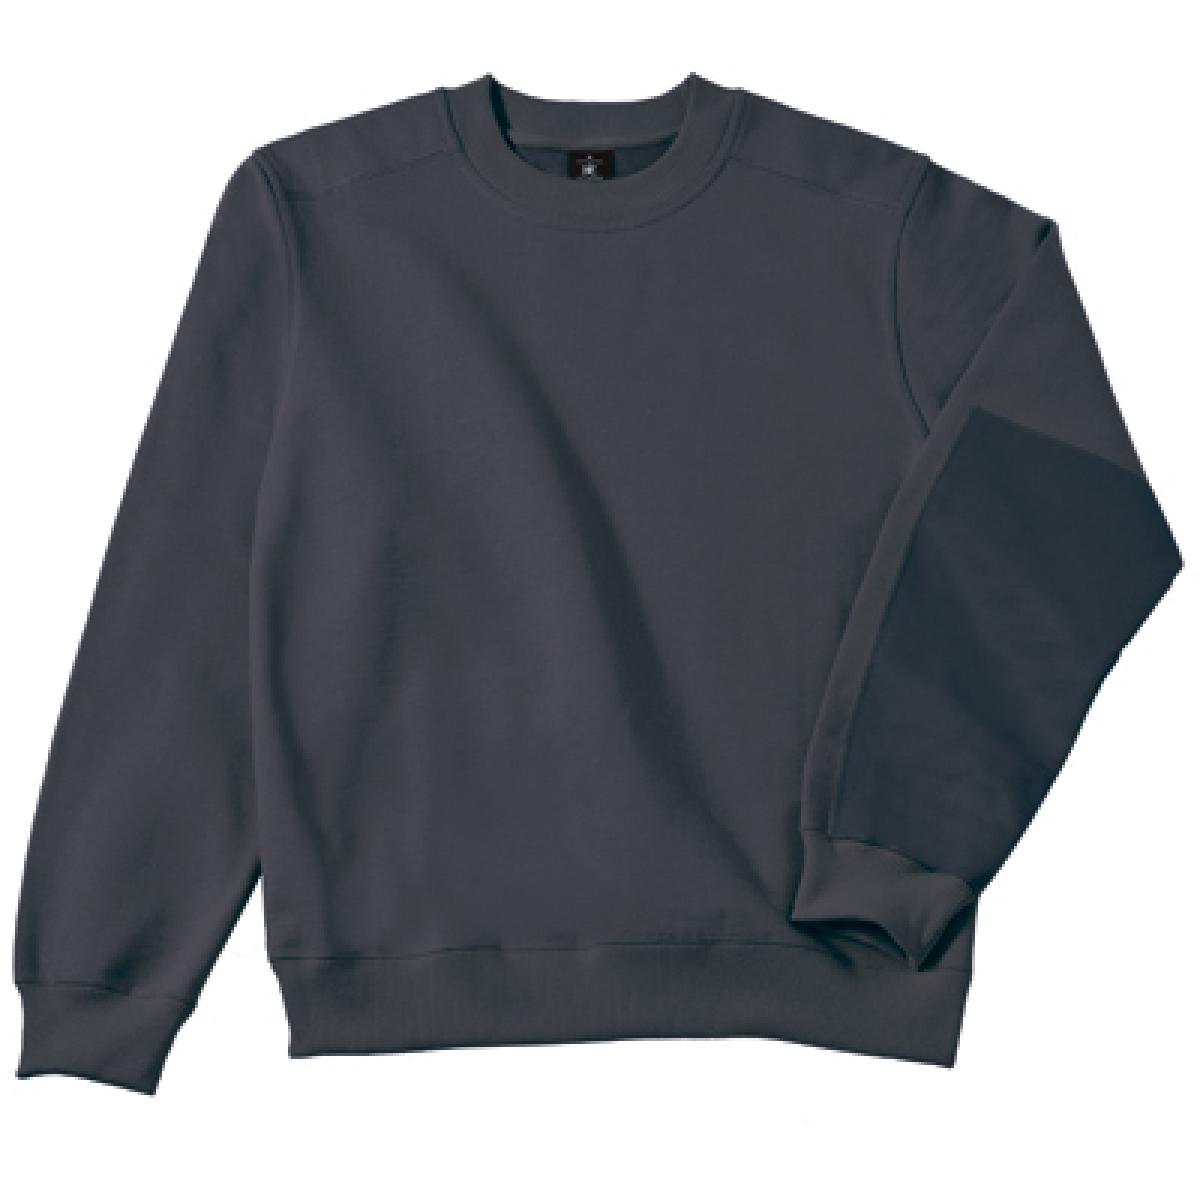 Hersteller: B&C Pro Collection Herstellernummer: WUC20 Artikelbezeichnung: Hero Pro Workwear Sweatshirt + Waschbar bis 60 °C Farbe: Dark Grey (Solid)